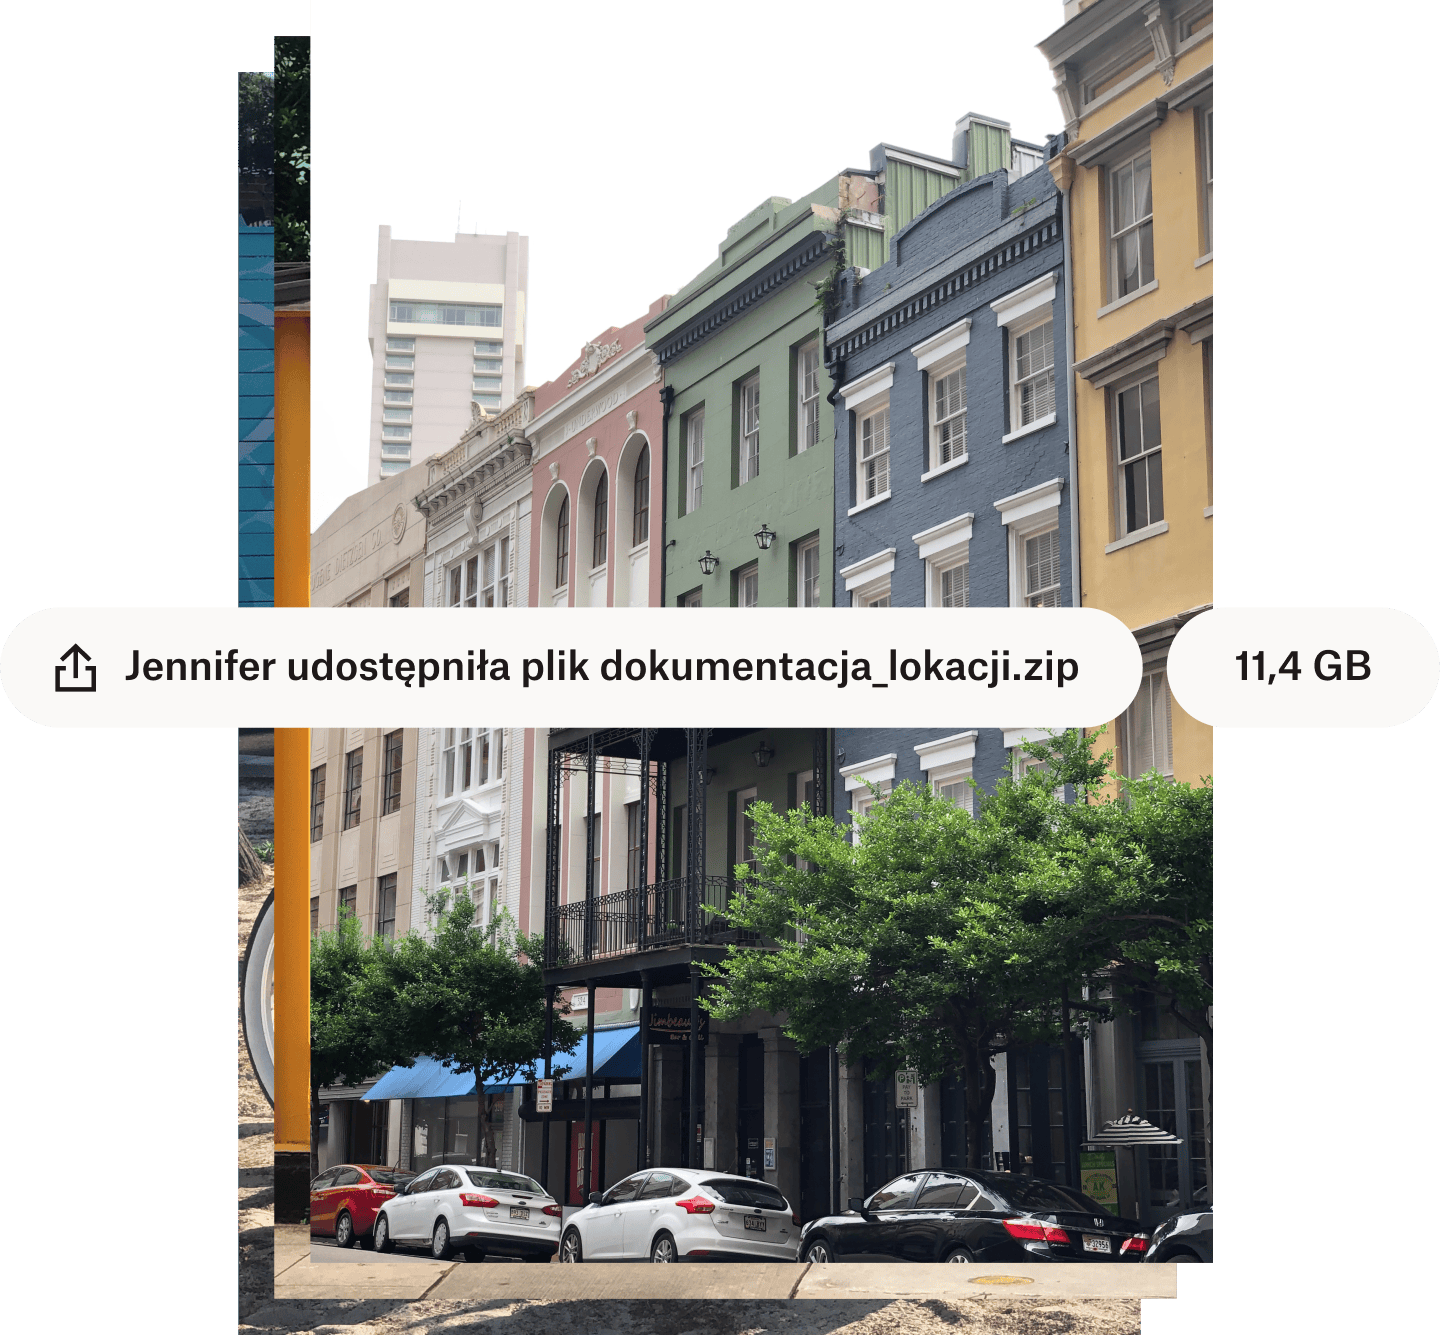 Zdjęcie ulicy miejskiej z kolorowymi budynkami z nałożonymi białymi dymkami, w których podano nazwę pliku i jego rozmiar